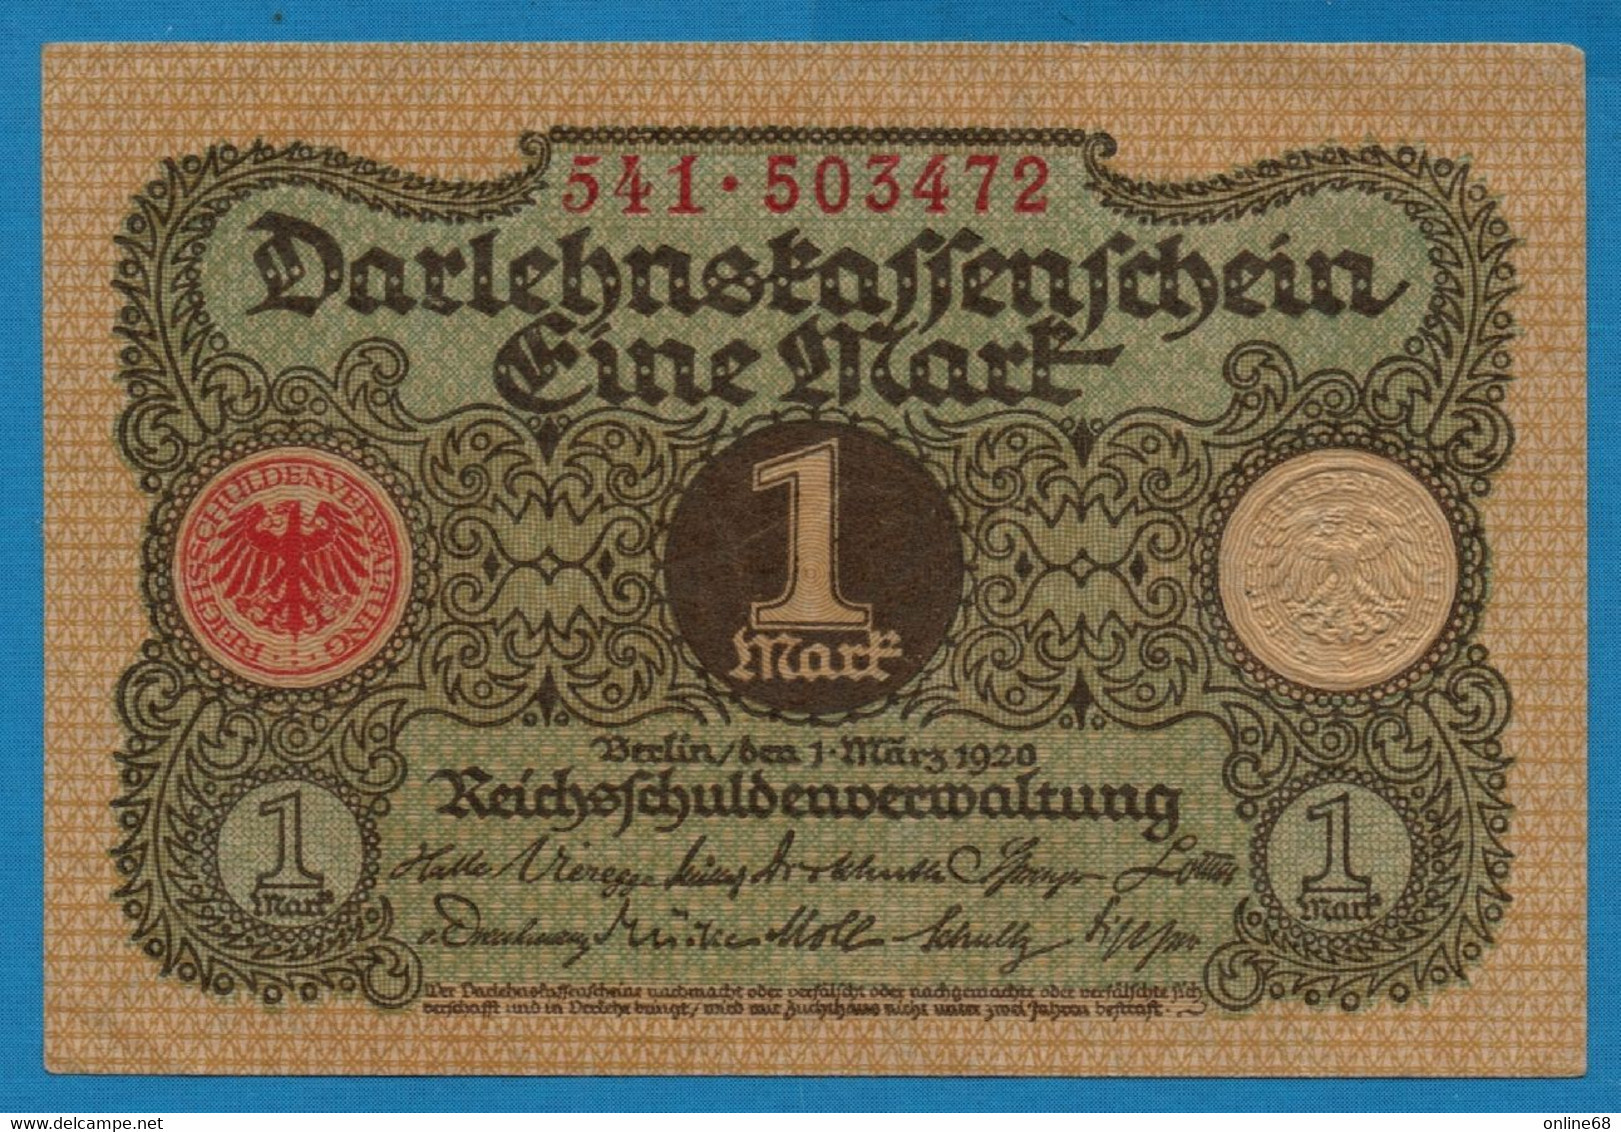 DEUTSCHES REICH 1 MARK 01.03.1920  # 541.503472 P# 58  DARLEHENSKASSENSCHEIN - Reichsschuldenverwaltung